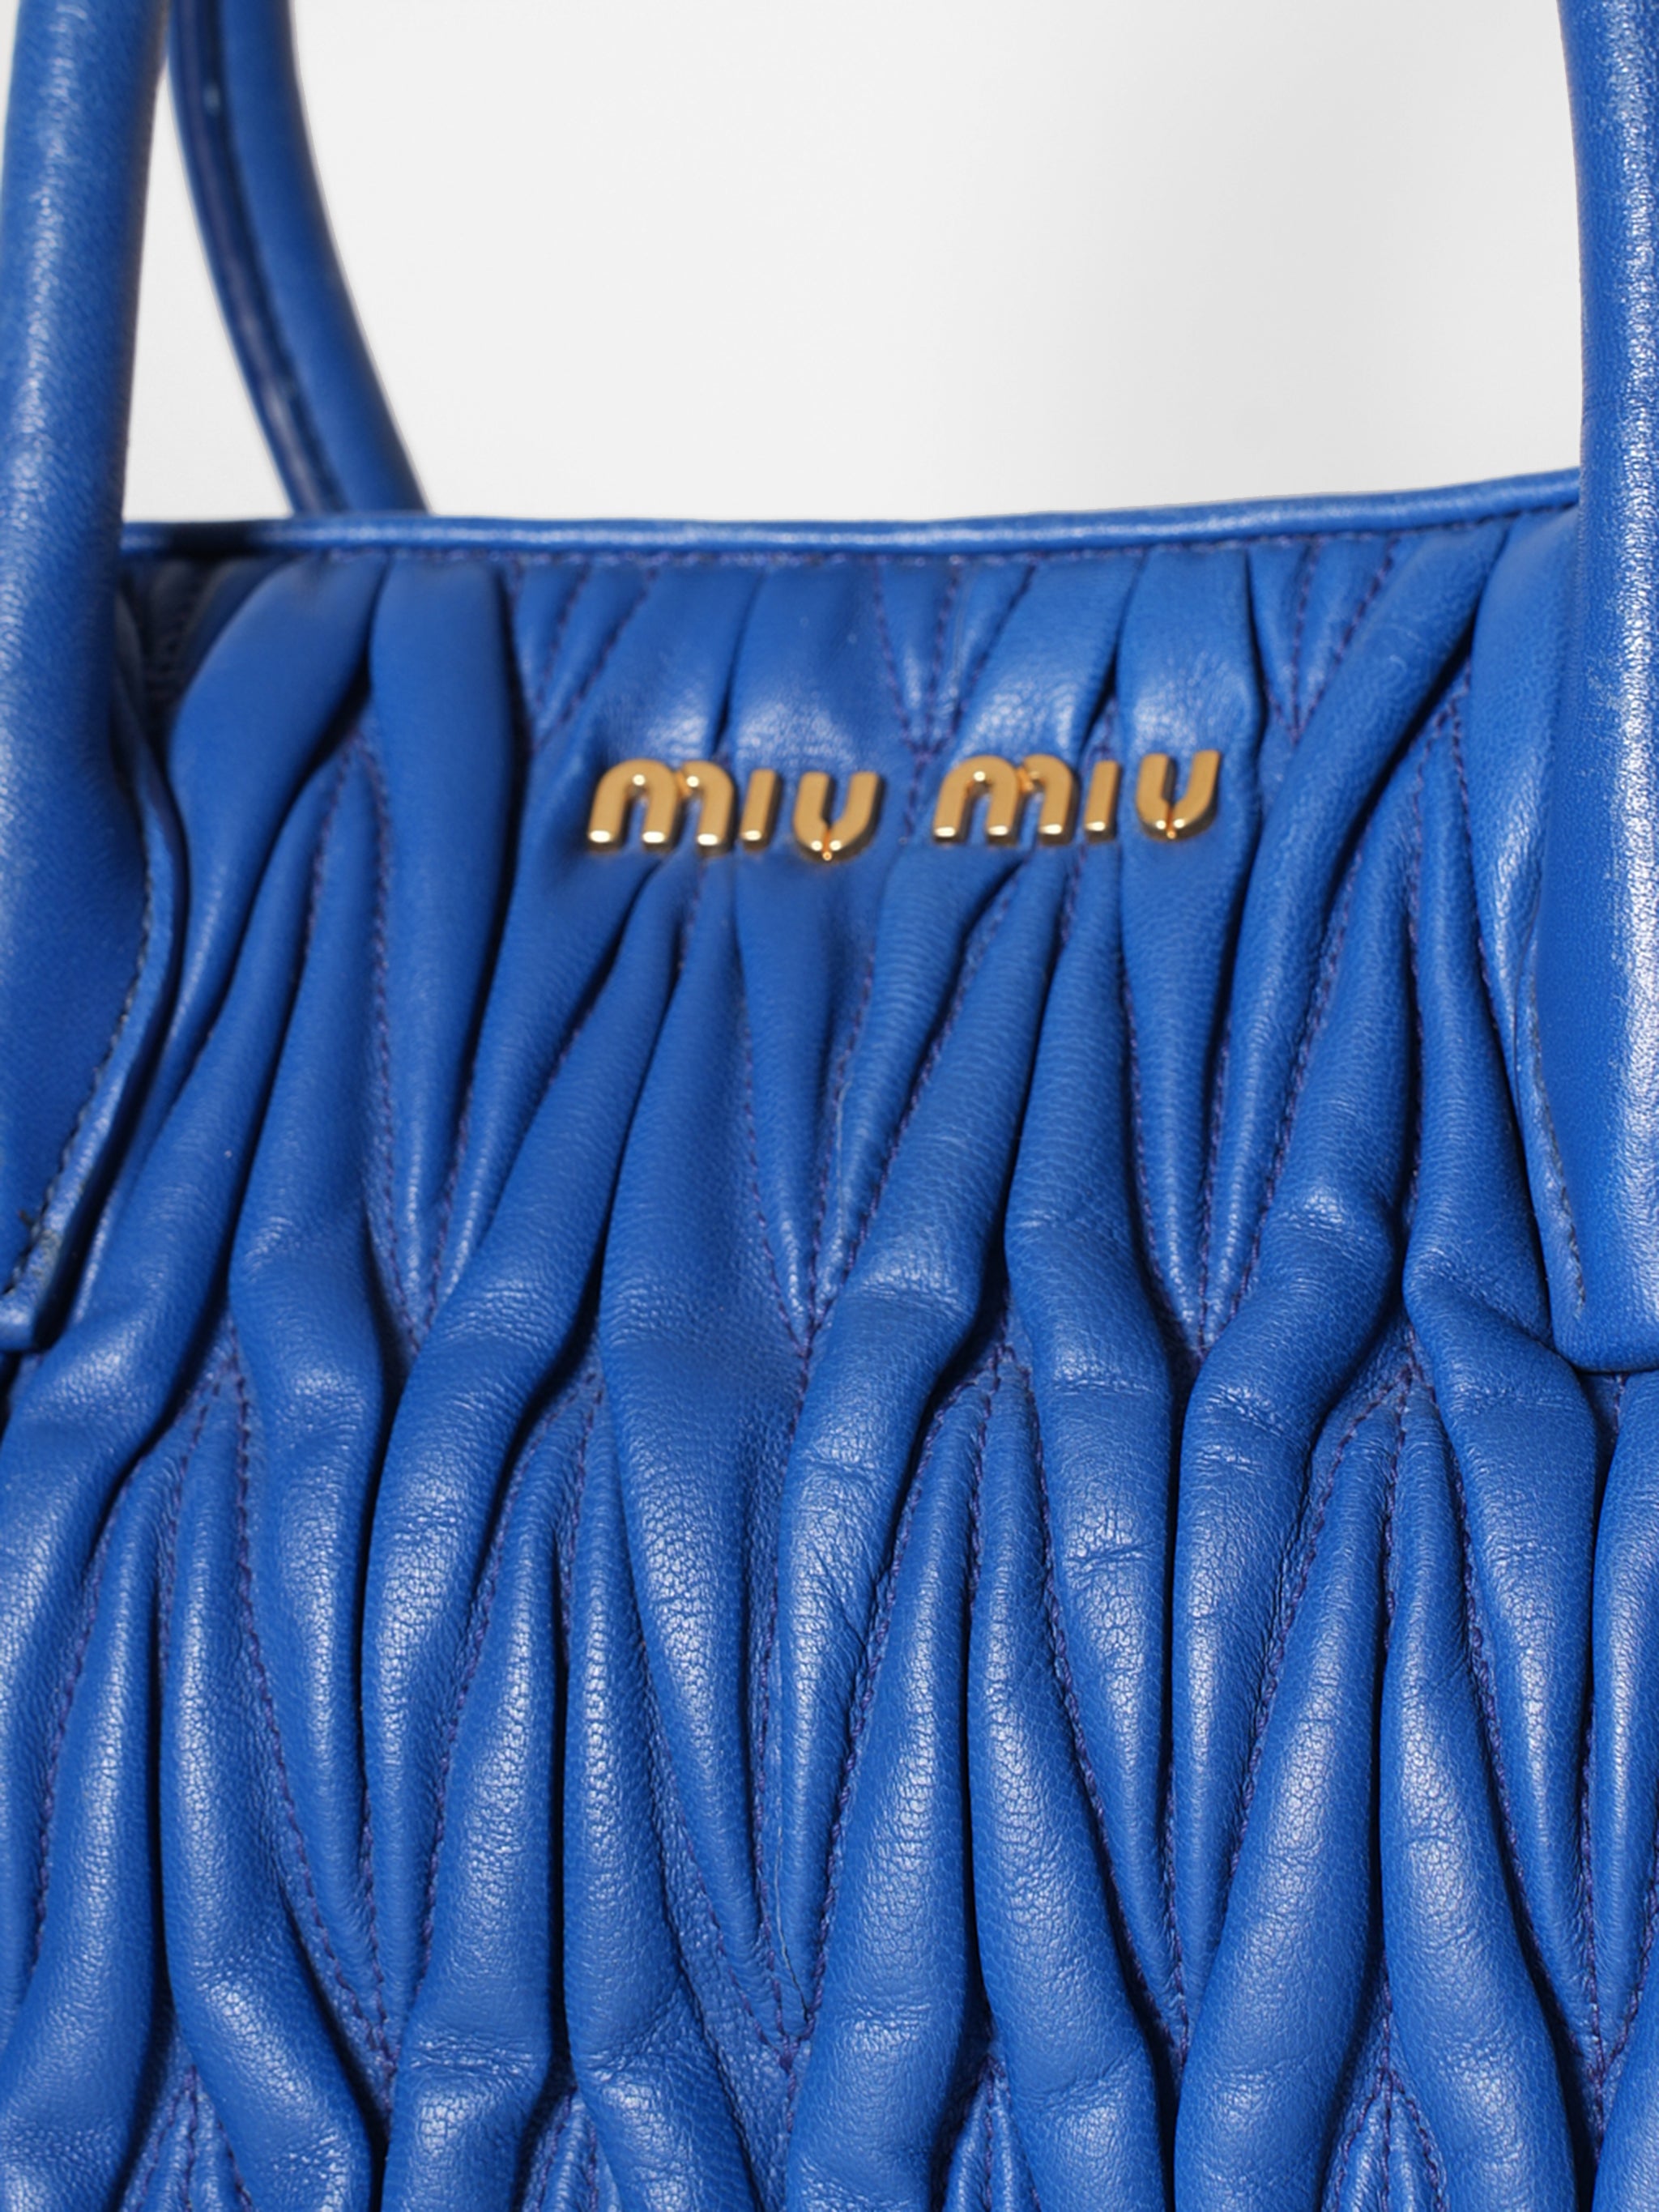 Miu Miu Blue Bag